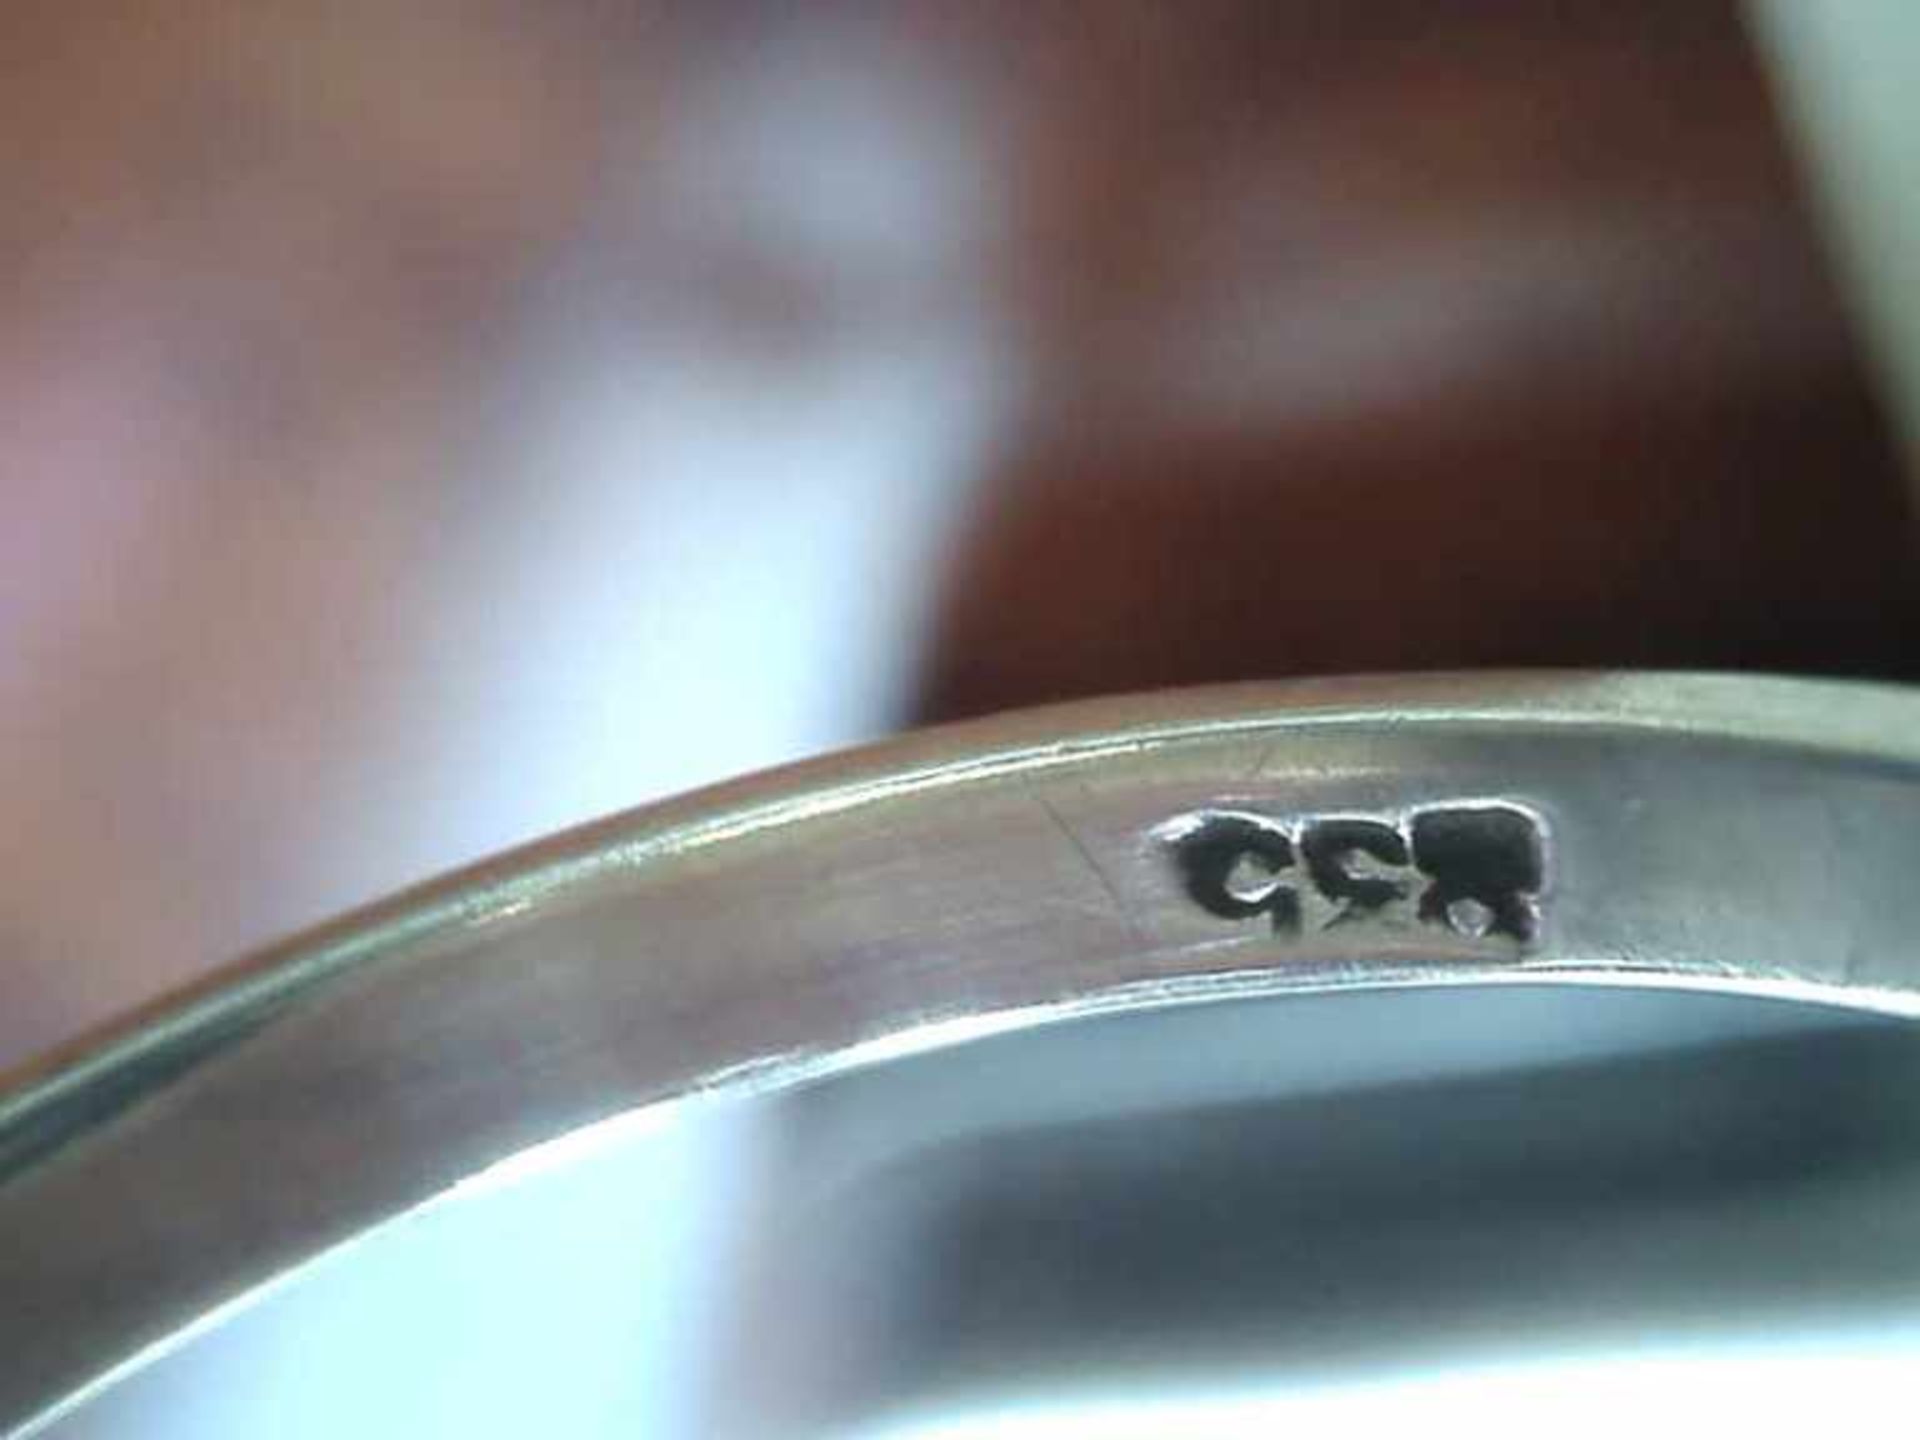 Damenring 835er Silber, 3,8 g, runder erhabener Ringkopf mit einem geschliffenen Aquastein, RG 58 - Image 2 of 2